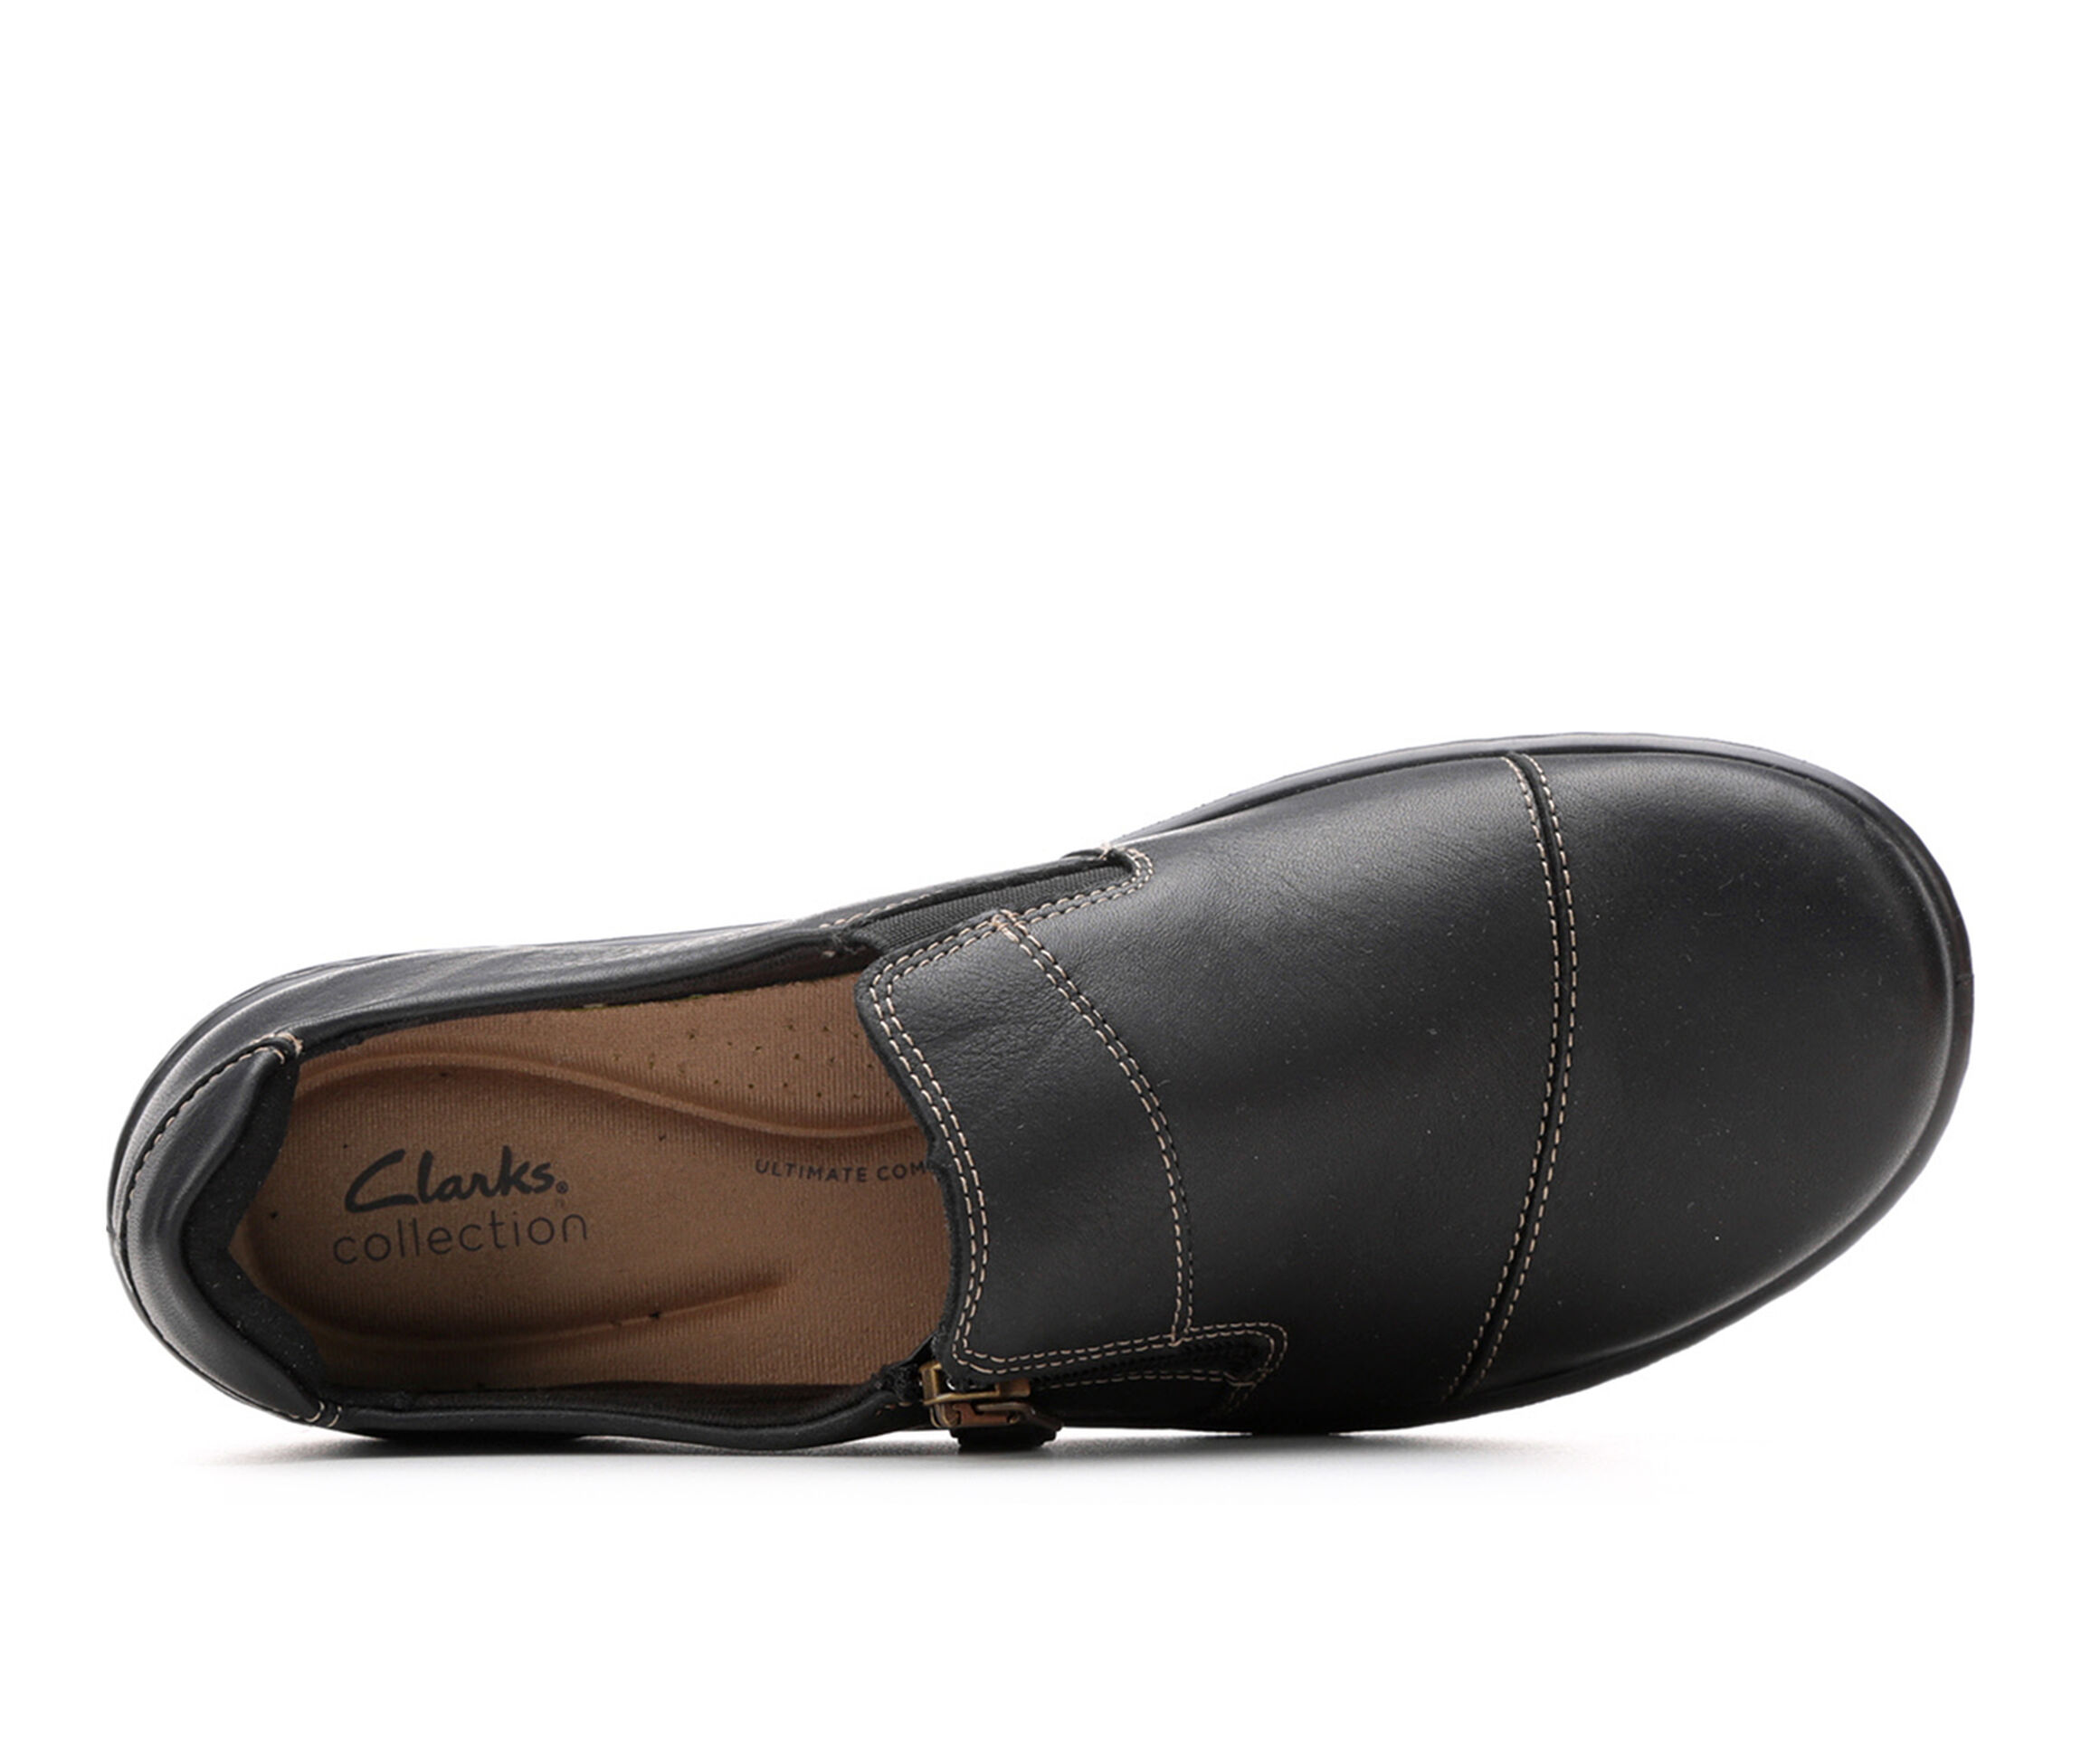 Shop Clarks Shoes, Sandals & Boots | Shoe Carnival